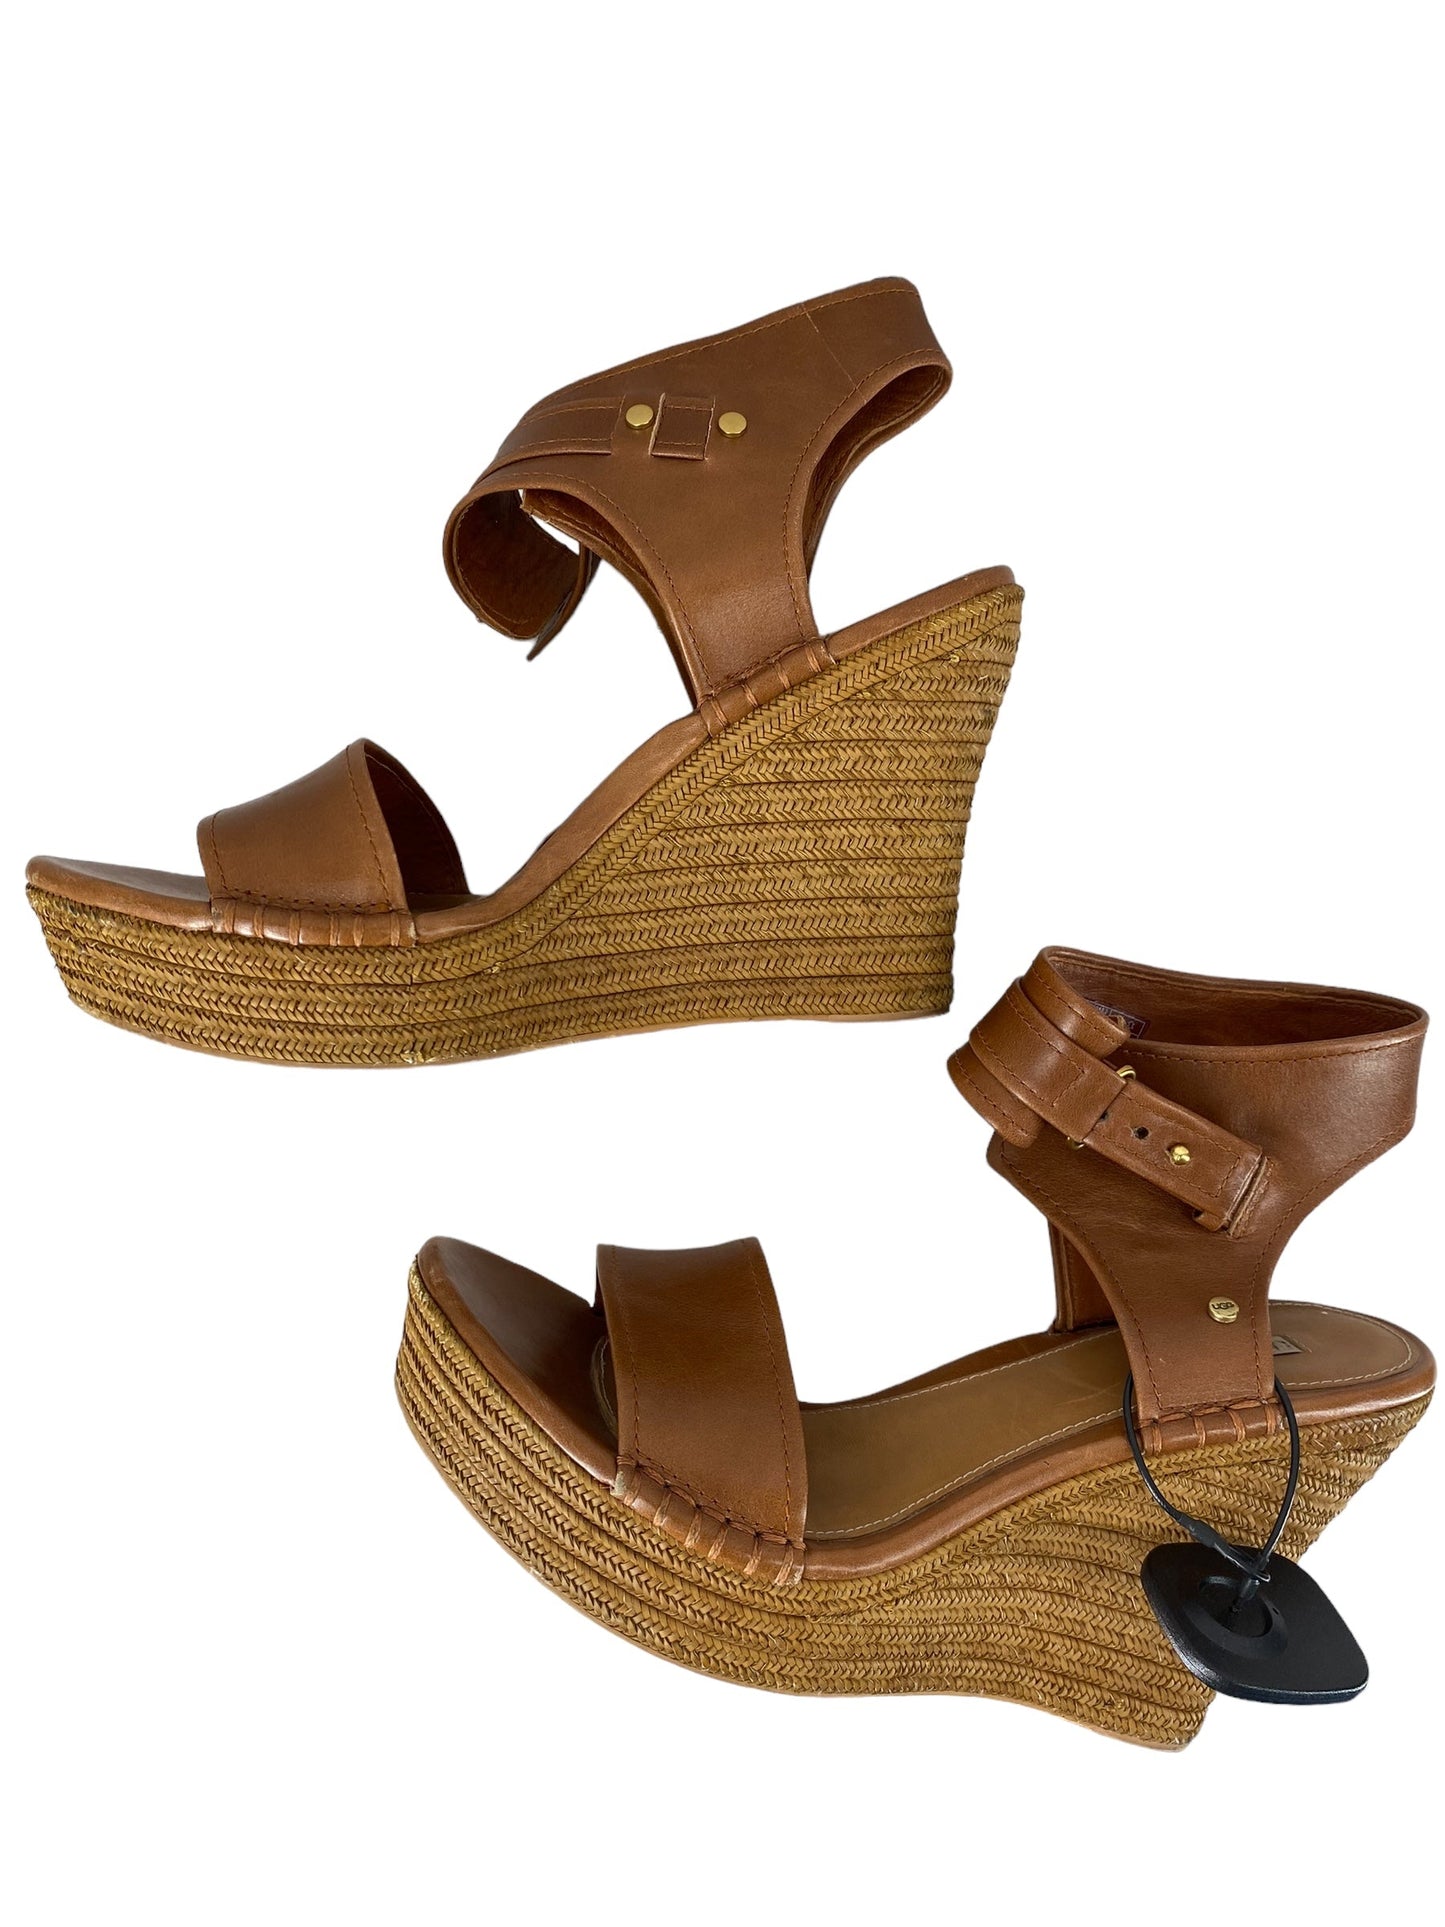 Brown Sandals Heels Platform Ugg, Size 10